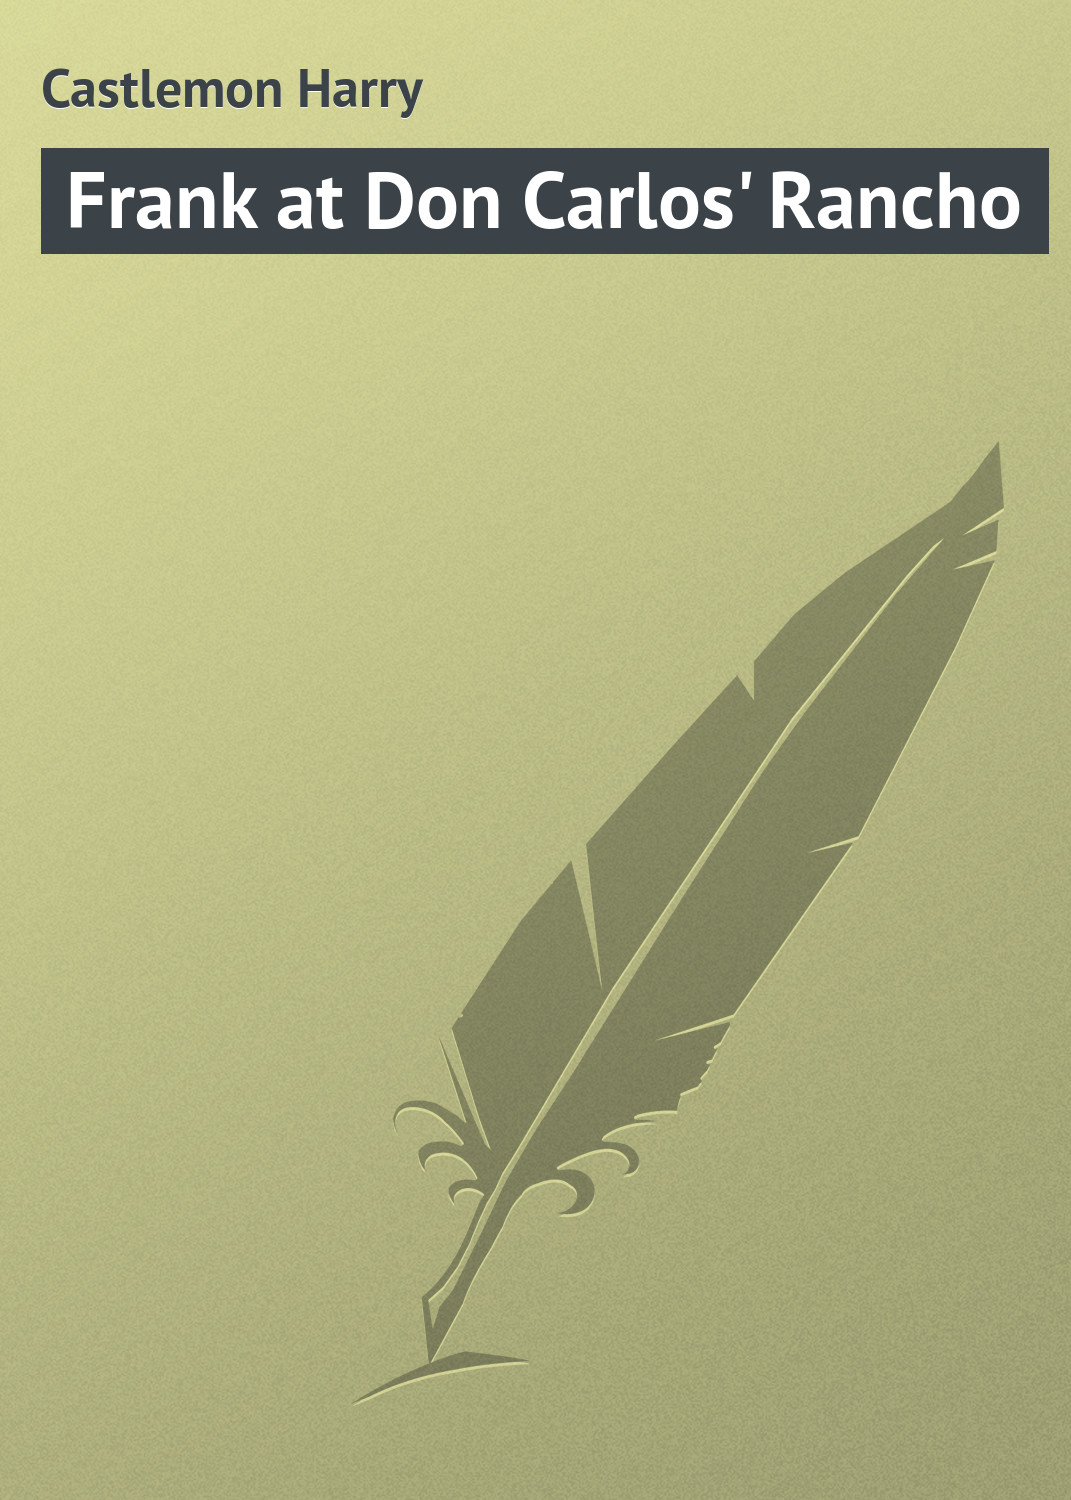 Книга Frank at Don Carlos' Rancho из серии , созданная Harry Castlemon, может относится к жанру Природа и животные, Зарубежная классика, Зарубежные детские книги. Стоимость электронной книги Frank at Don Carlos' Rancho с идентификатором 23148811 составляет 5.99 руб.